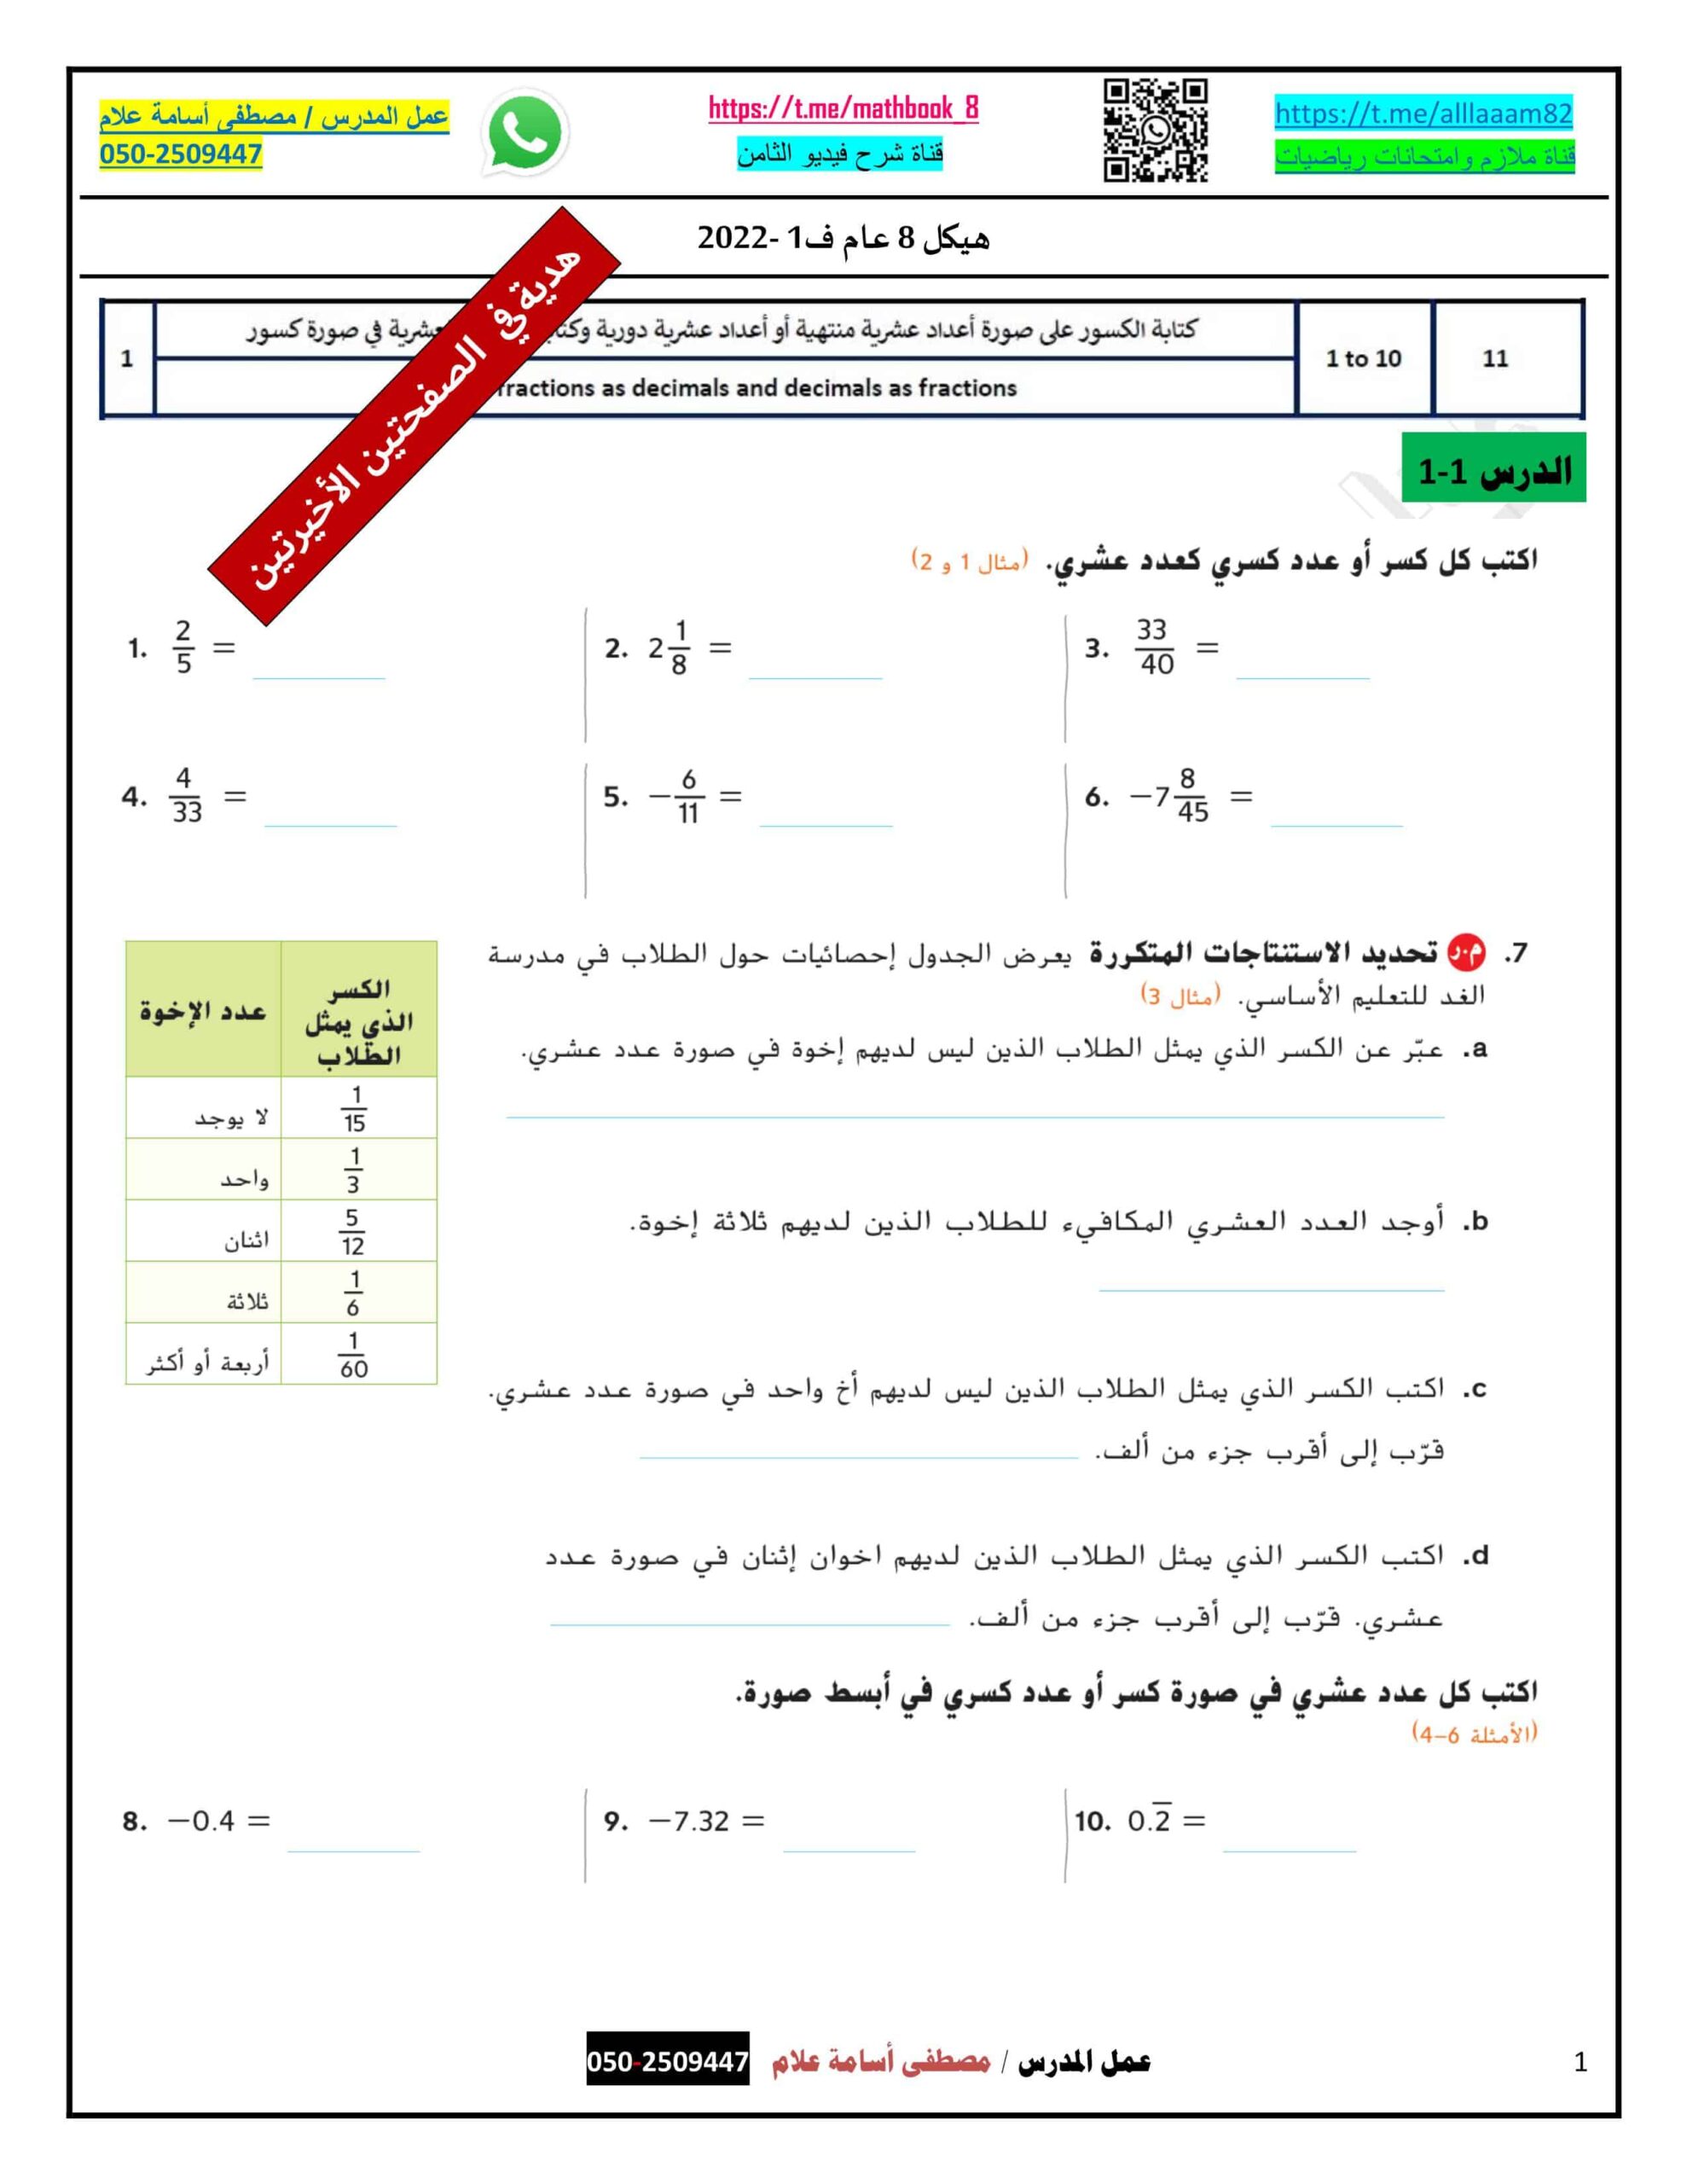 حل أوراق عمل أسئلة هيكل الامتحان الرياضيات المتكاملة الصف الثامن عام